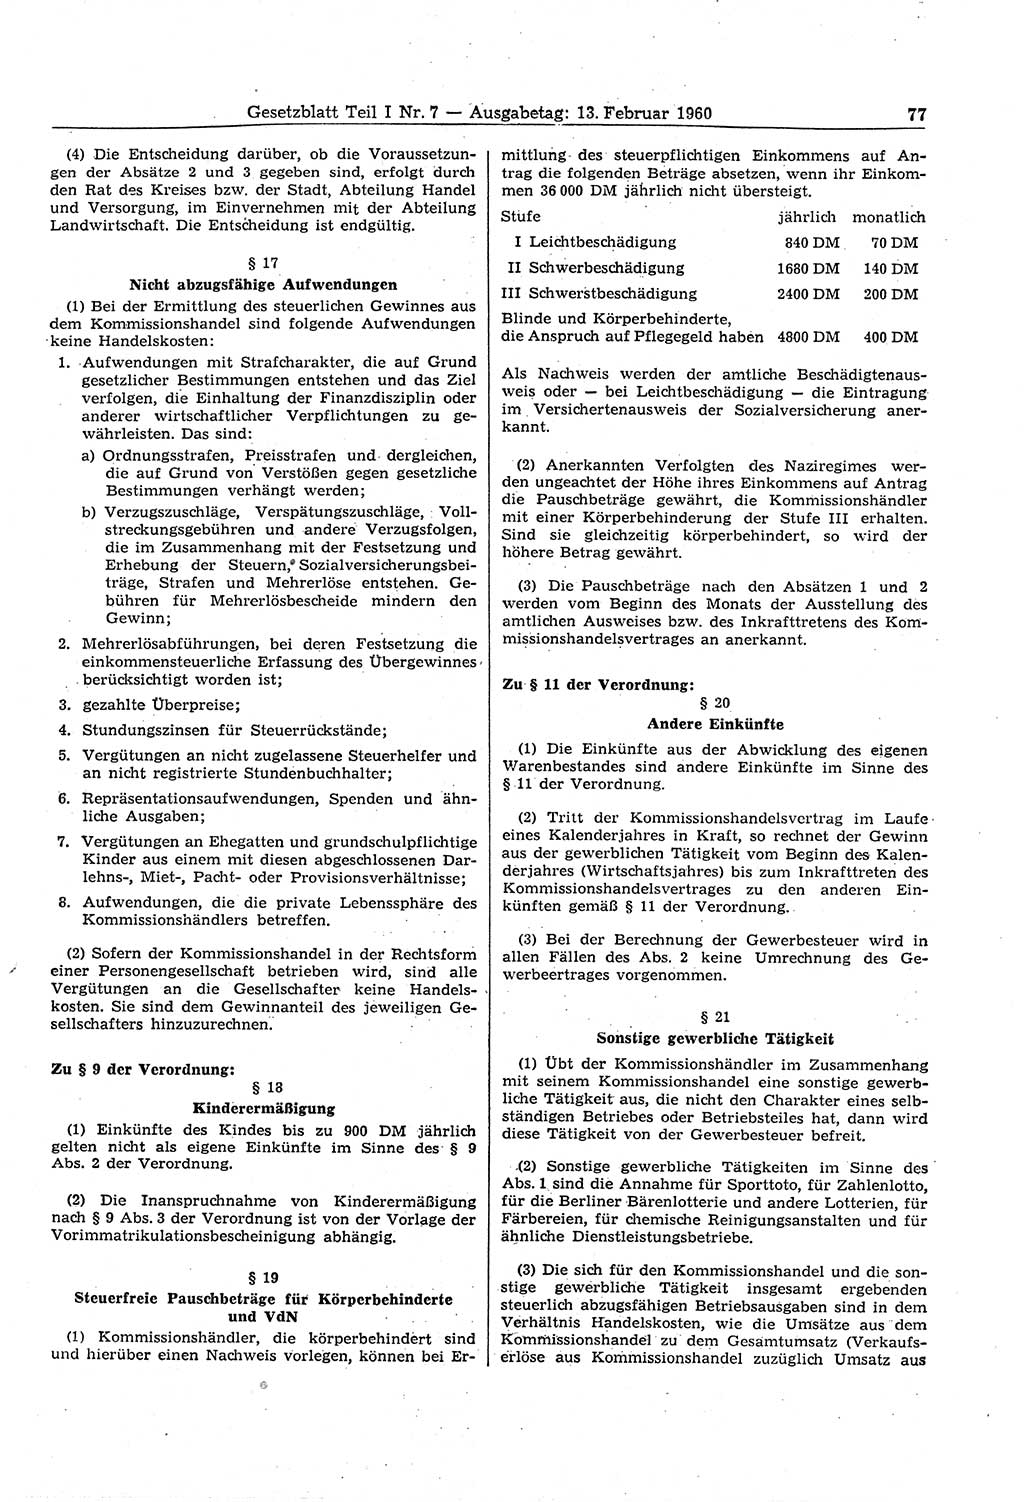 Gesetzblatt (GBl.) der Deutschen Demokratischen Republik (DDR) Teil Ⅰ 1960, Seite 77 (GBl. DDR Ⅰ 1960, S. 77)